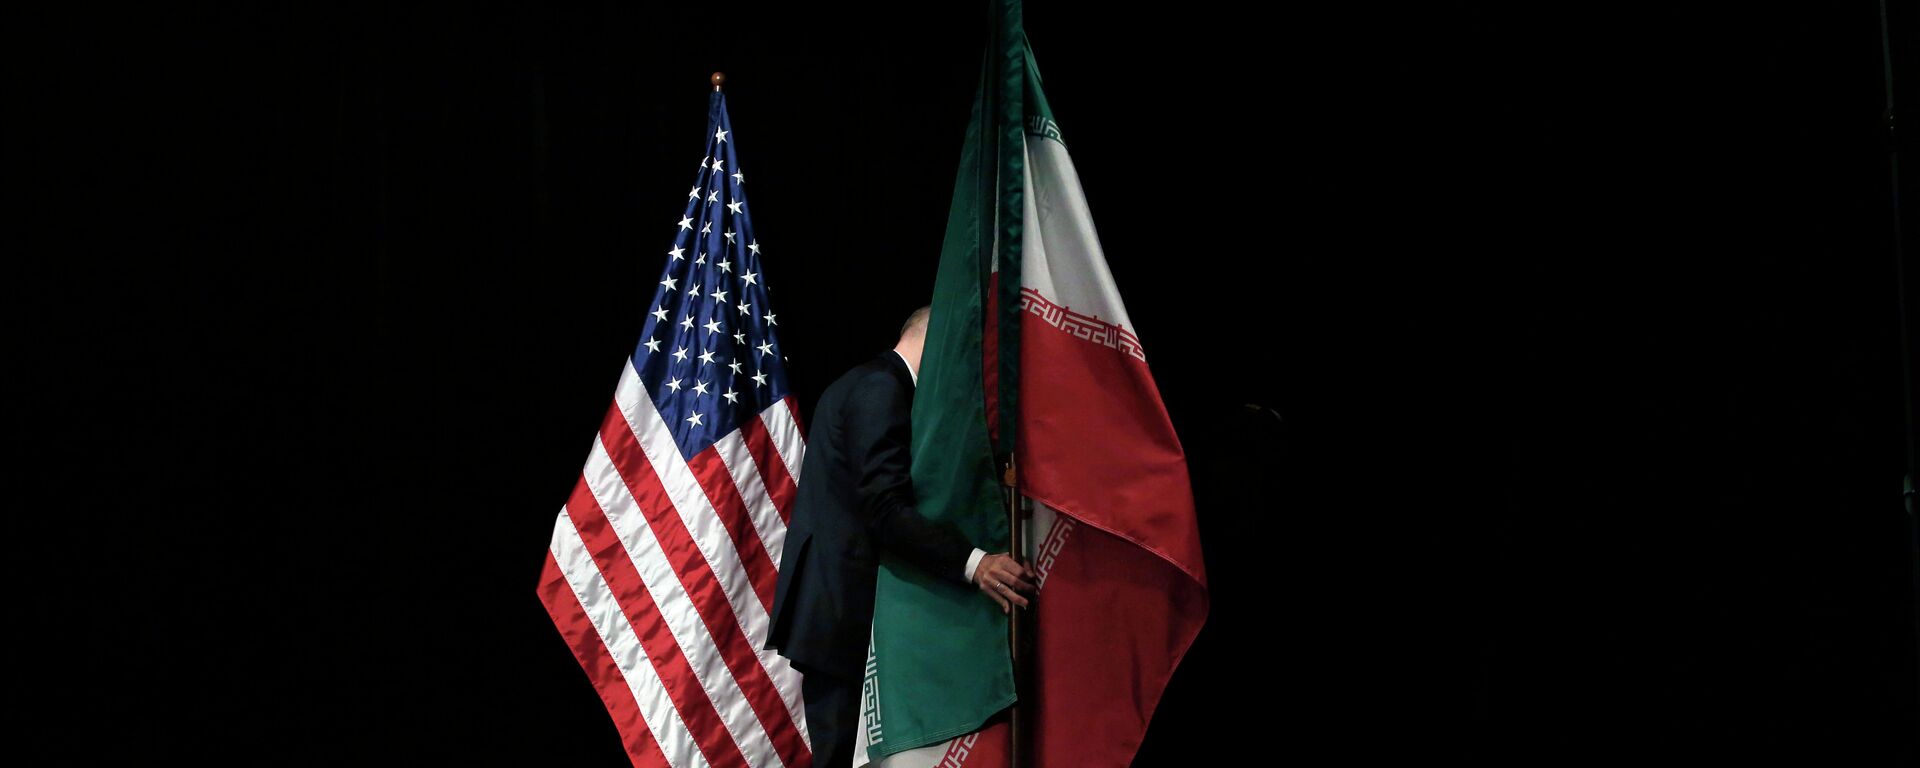 Banderas de EEUU e Irán - Sputnik Mundo, 1920, 09.02.2021